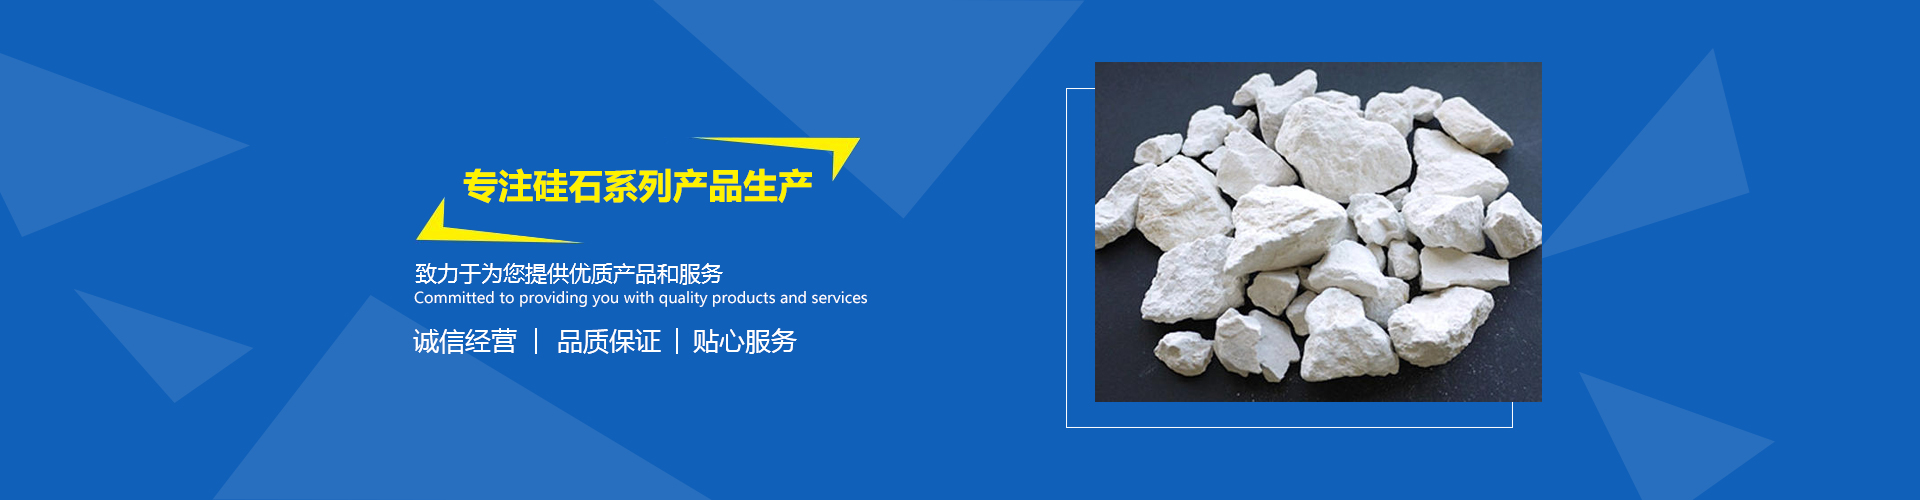 凌源市红日矿业有限公司是一家专业的硅石球厂家。产品有硅石球、酸性耐火砖、硅石粉、硅石砂、石英砂滤料、碎石、膨润土、石英砂，硅石球价格优惠。